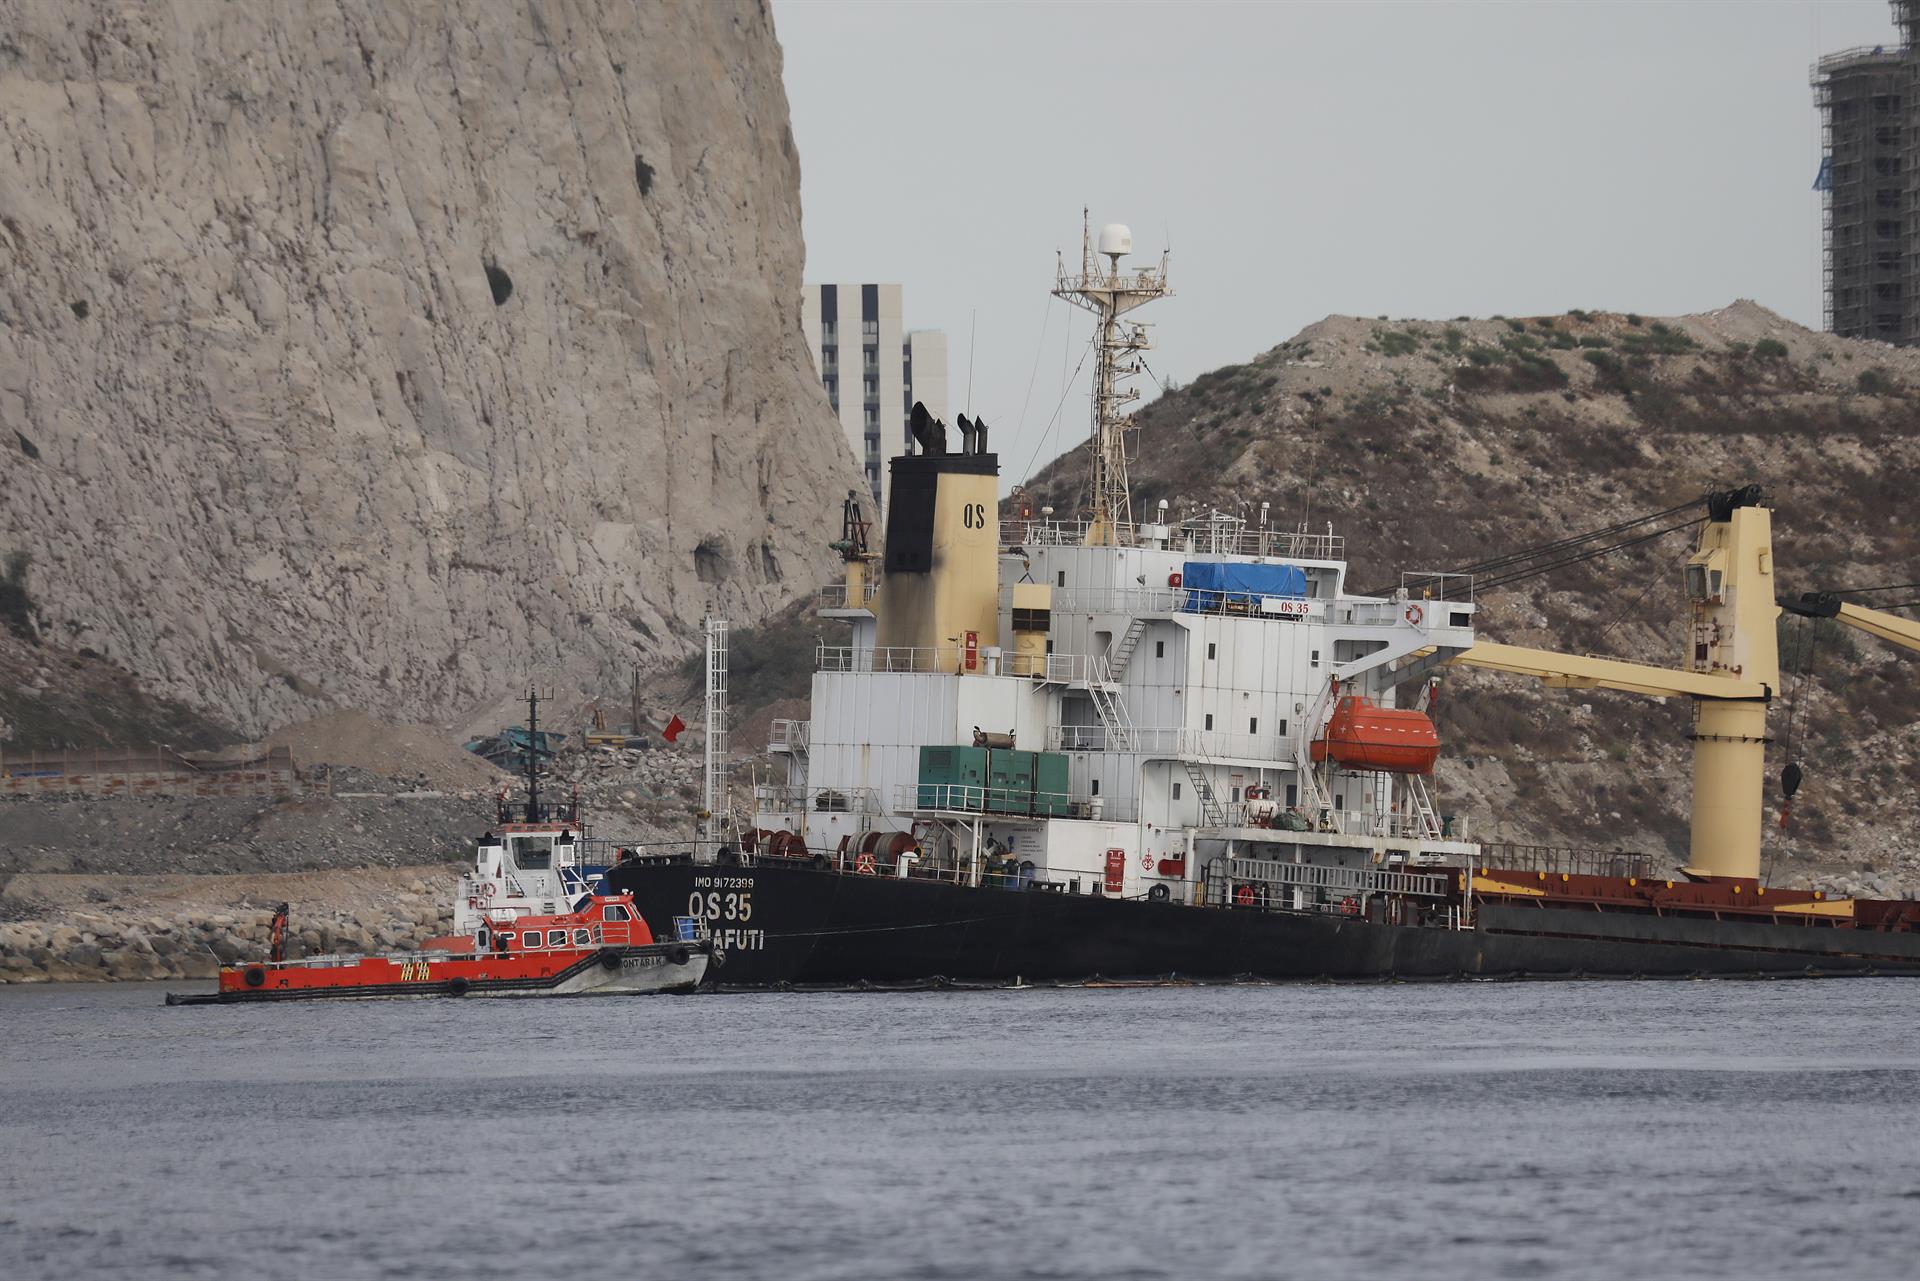 El buque "OS 35" varado en aguas cercanas al Peñón de Gibraltar. EFE/A. Carrasco Ragel/ARCHIVO